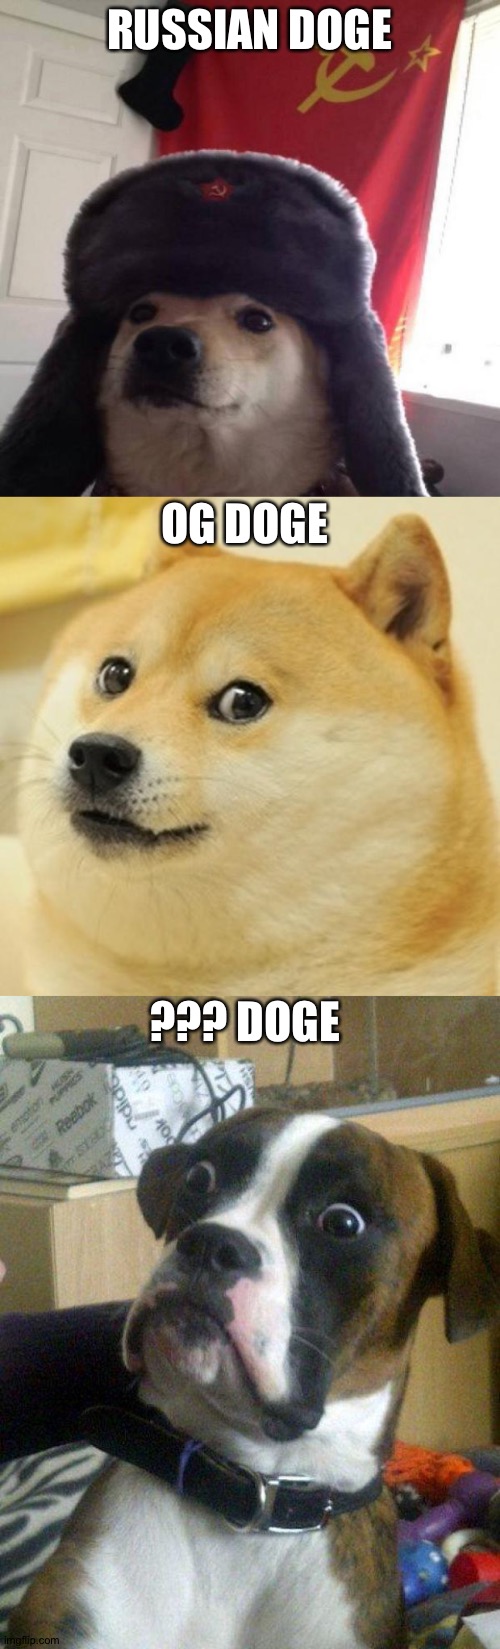 Alternative Doge | RUSSIAN DOGE; OG DOGE; ??? DOGE | image tagged in russian doge,memes,doge,blankie the shocked dog,alternative,dog | made w/ Imgflip meme maker